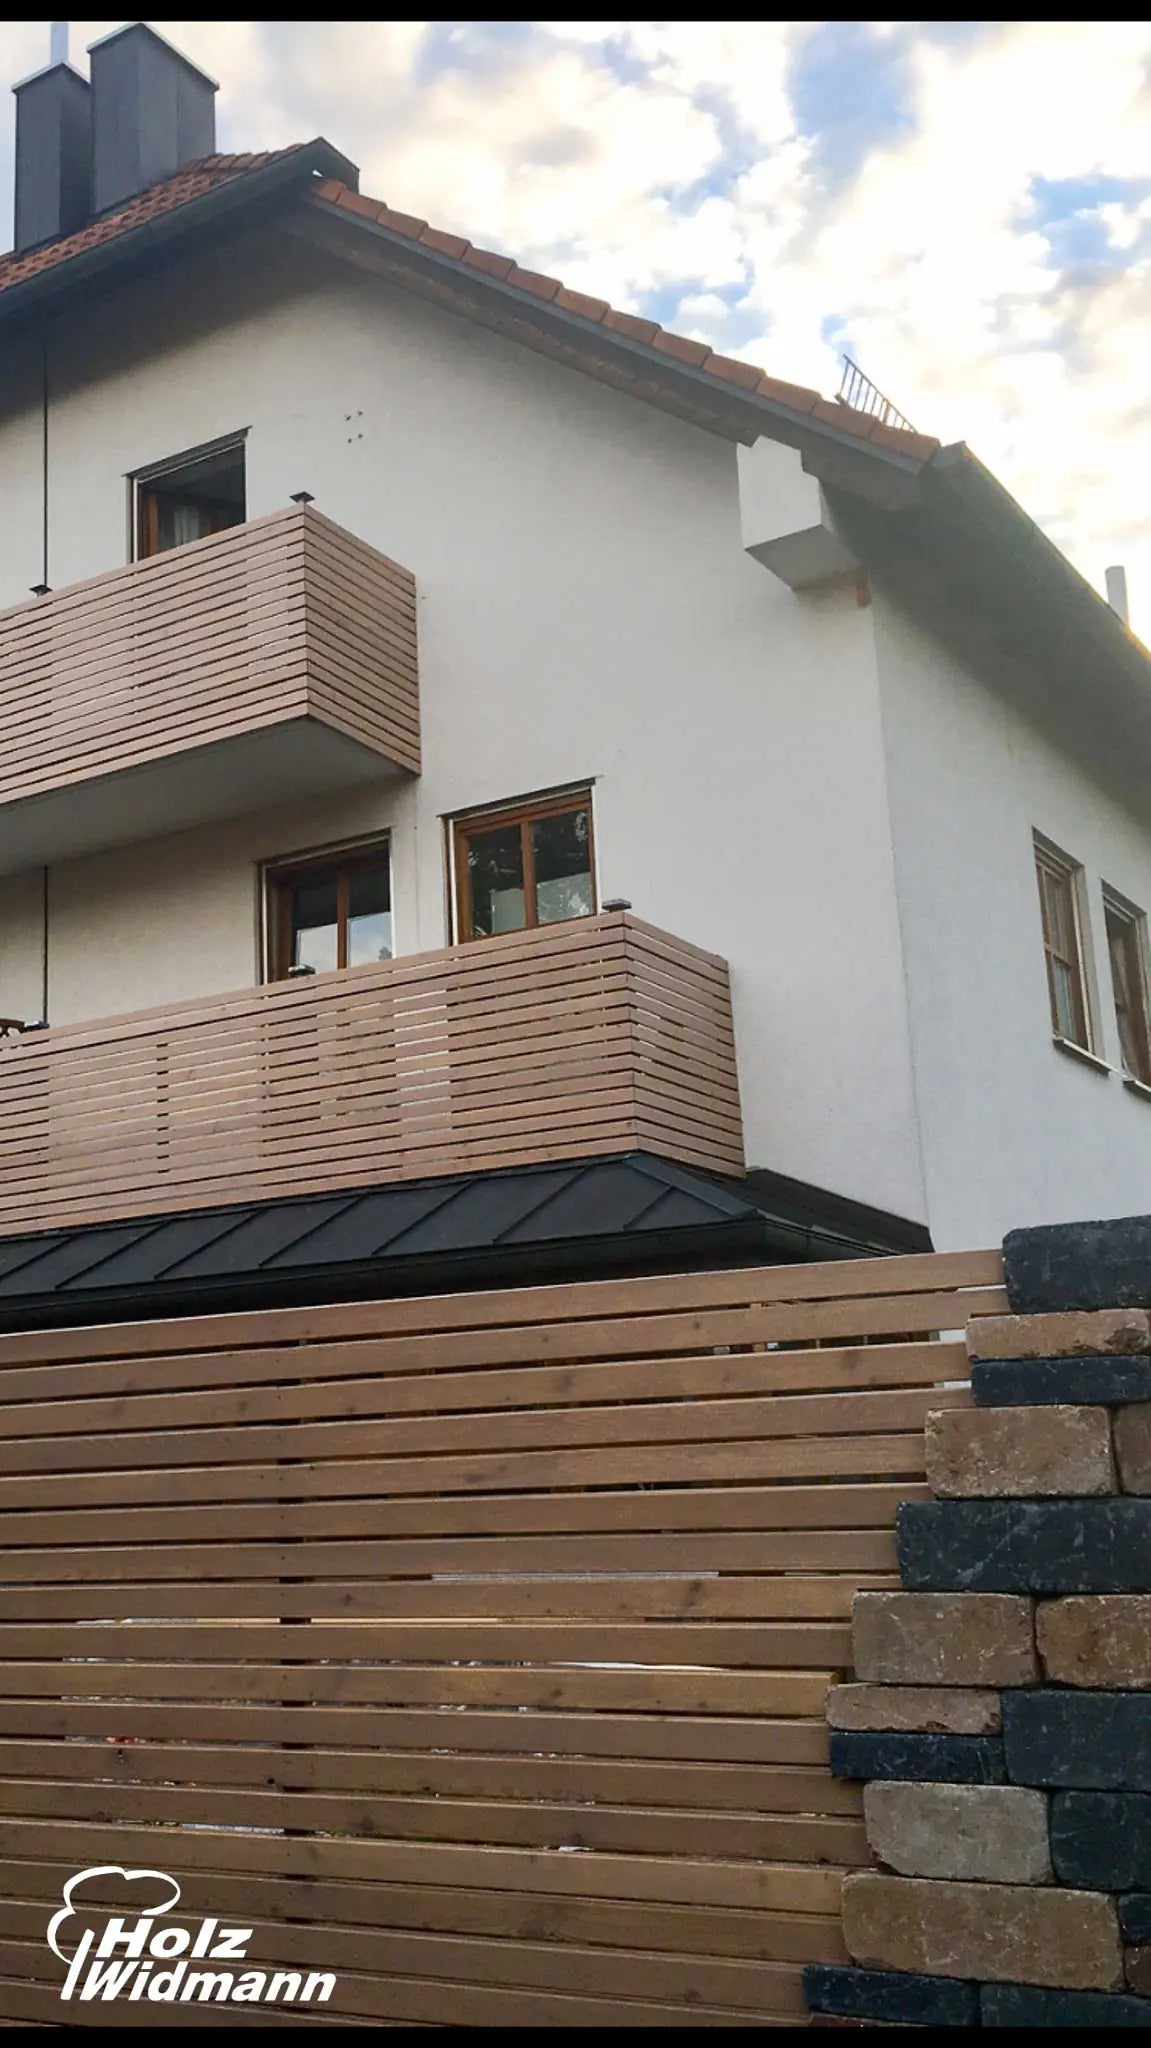 Sichtschutz Rhombus - Kreative Garteneinfassung mit 27x68mm - Holz Widmann - Meine Holzhandlung - Holz kaufen München